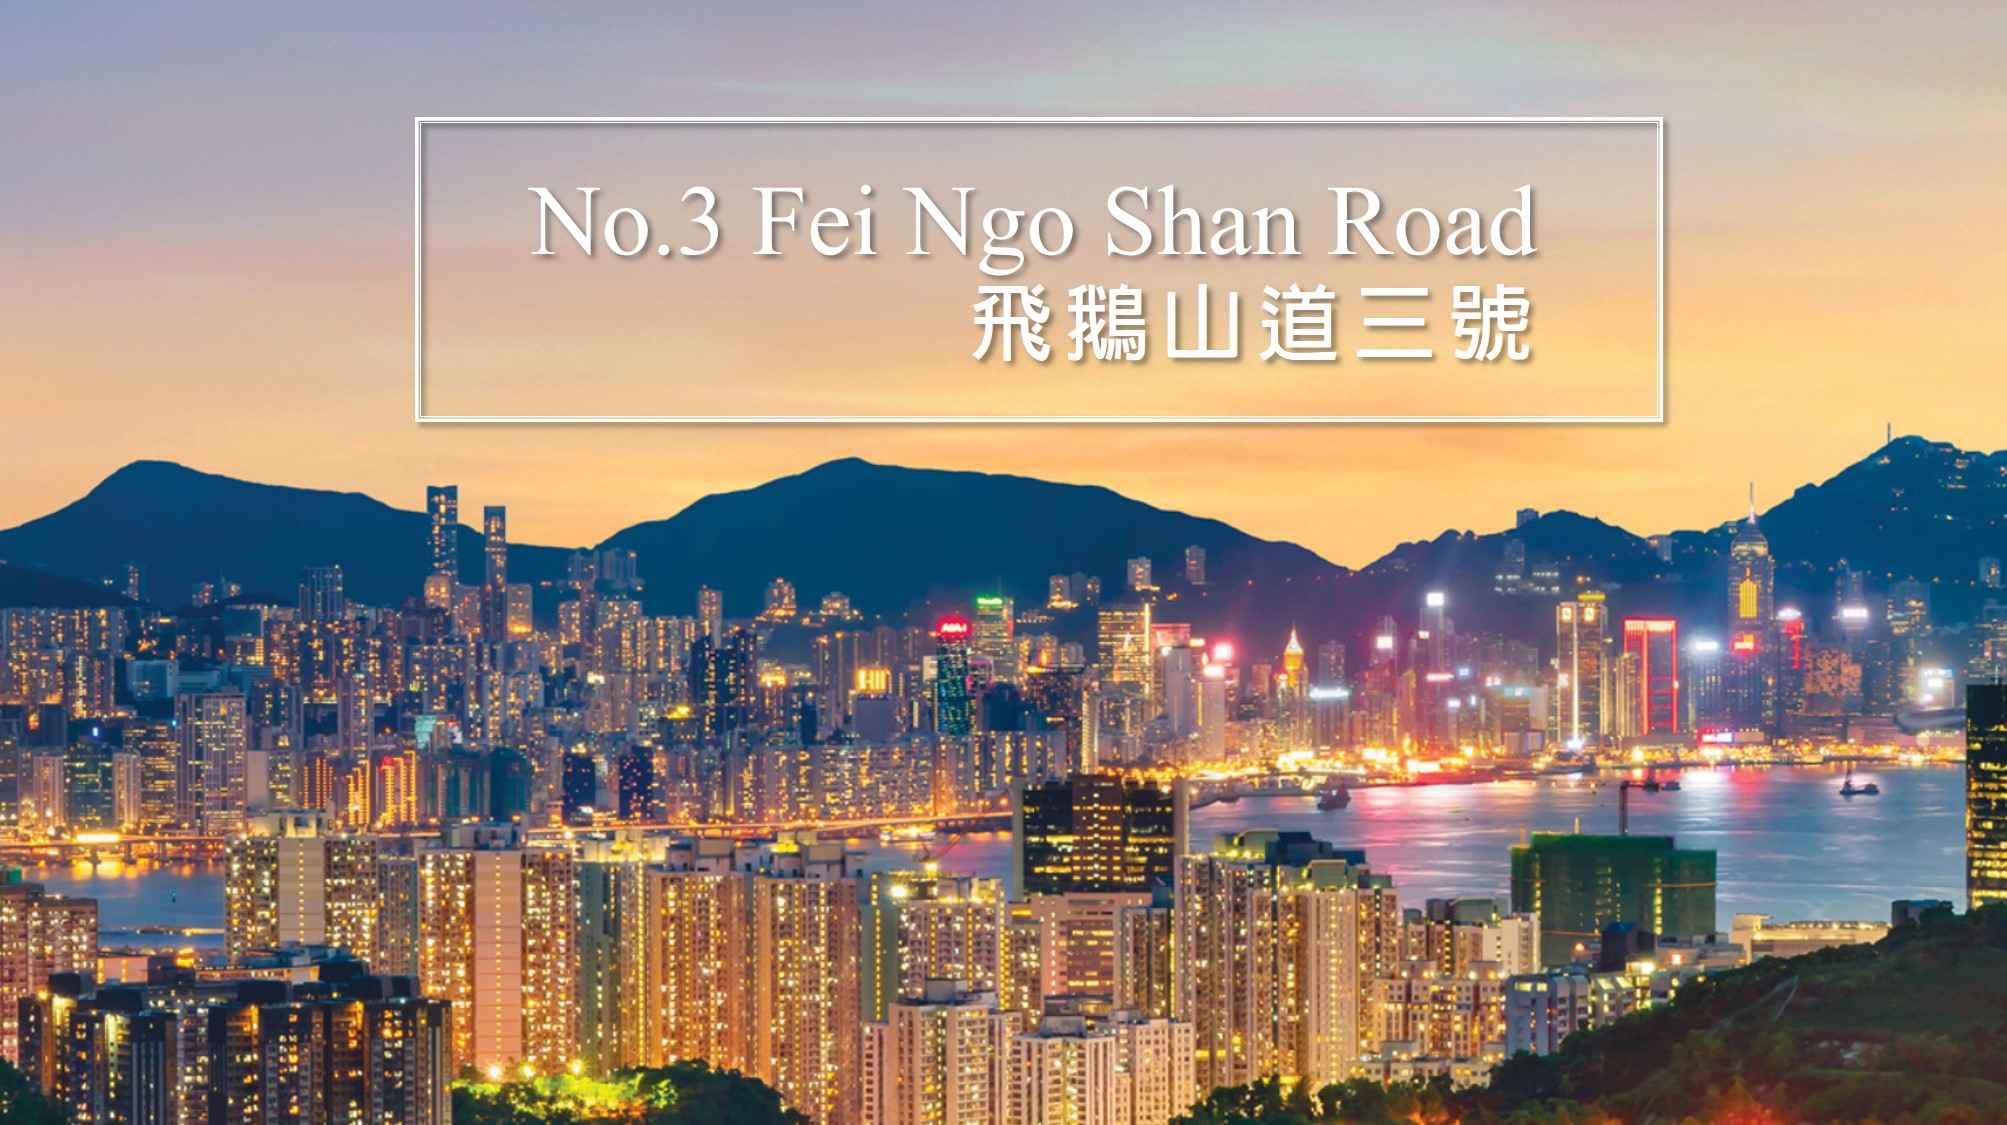 飞鹅山道三号 No 3 Fei Ngo Shan Road